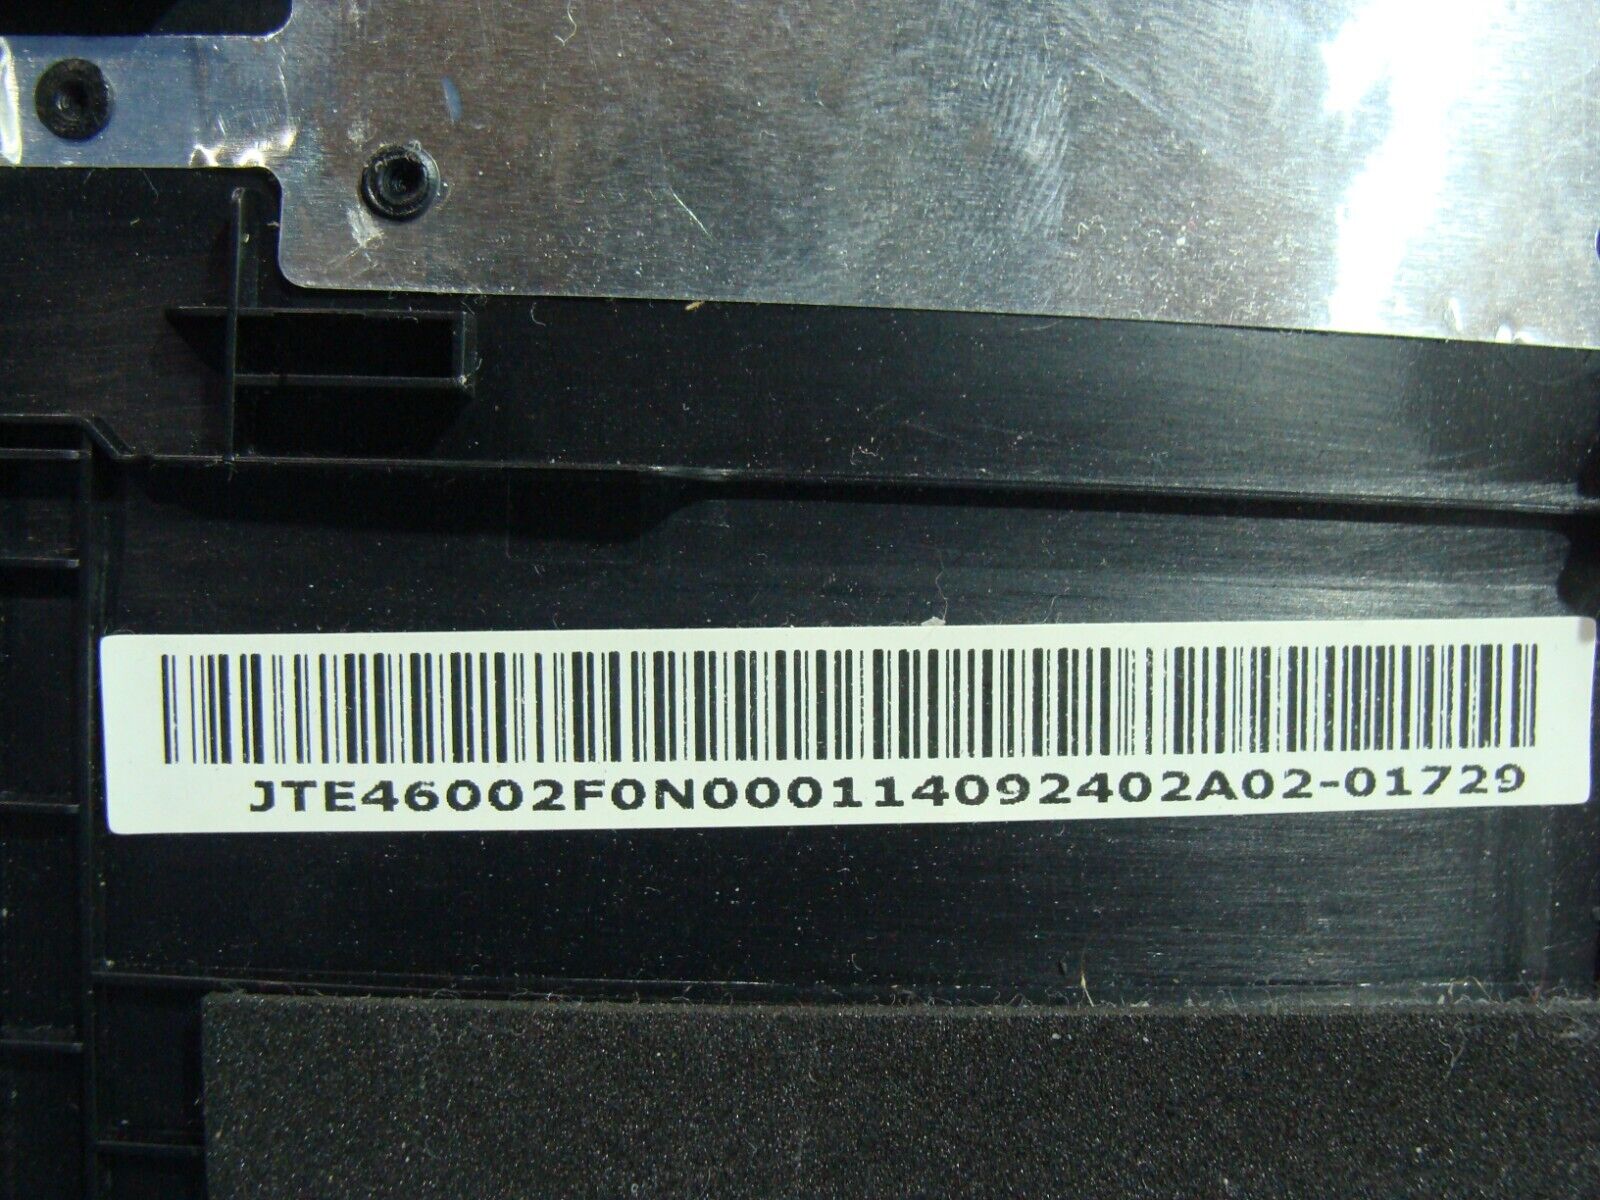 Acer Aspire VN7-591G-74LK 15.6